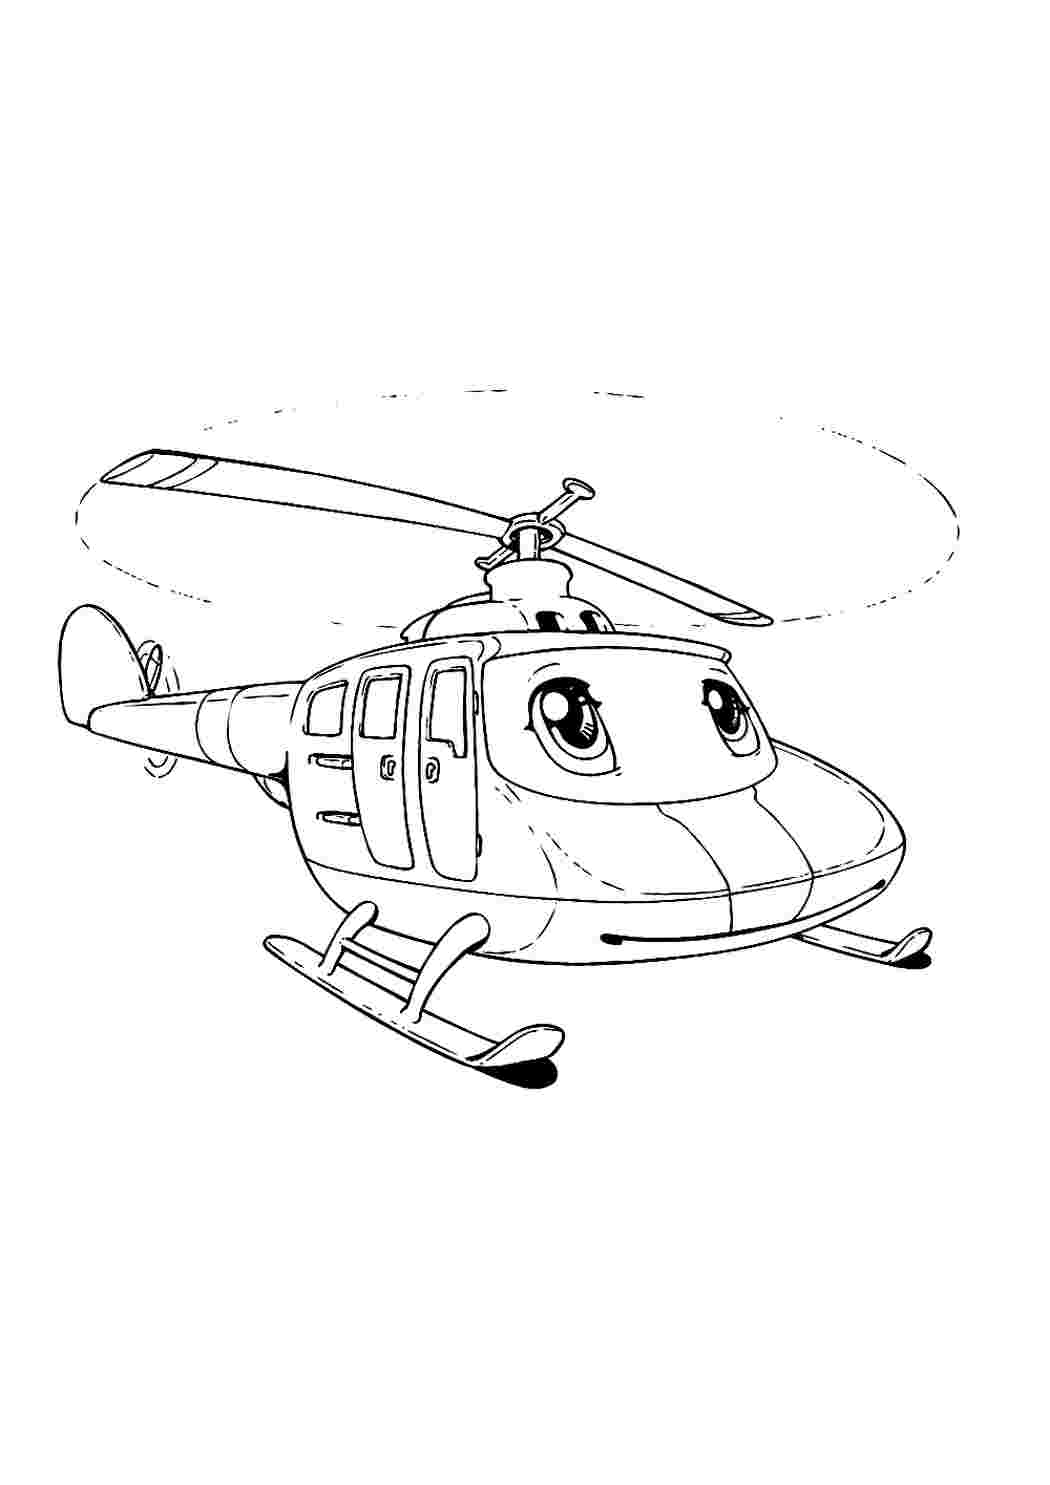 Раскраска УП-8 139Р Вертолеты